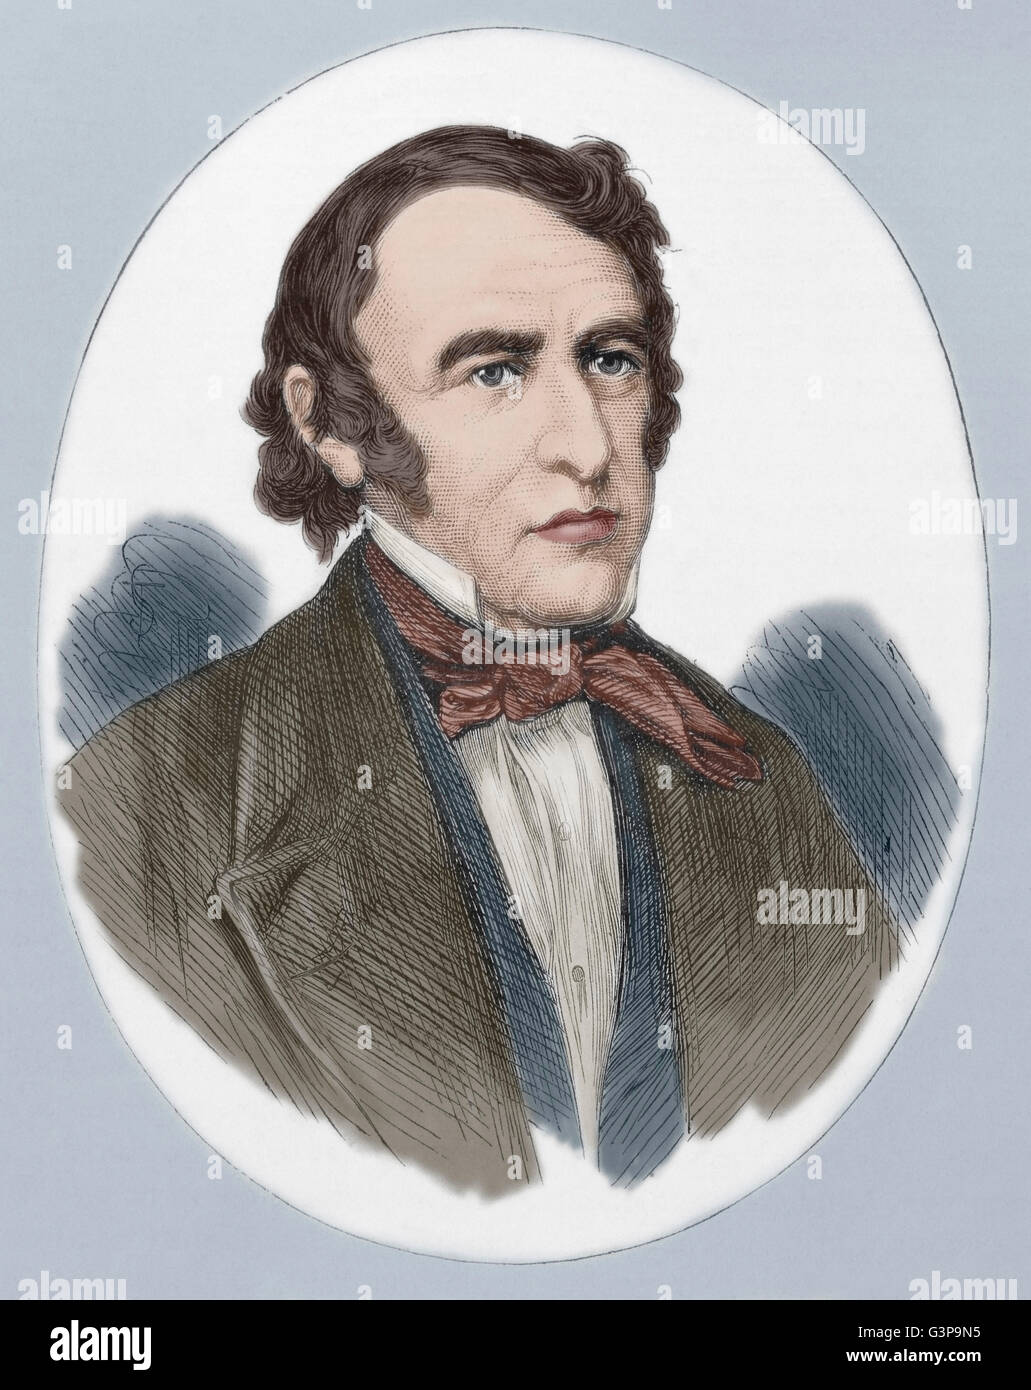 Zachary Taylor (1784-1850). US-amerikanischer Offizier und Politiker. 12. Präsident der Vereinigten Staaten (1849-1850. Porträt. Gravur. Farbige. Stockfoto